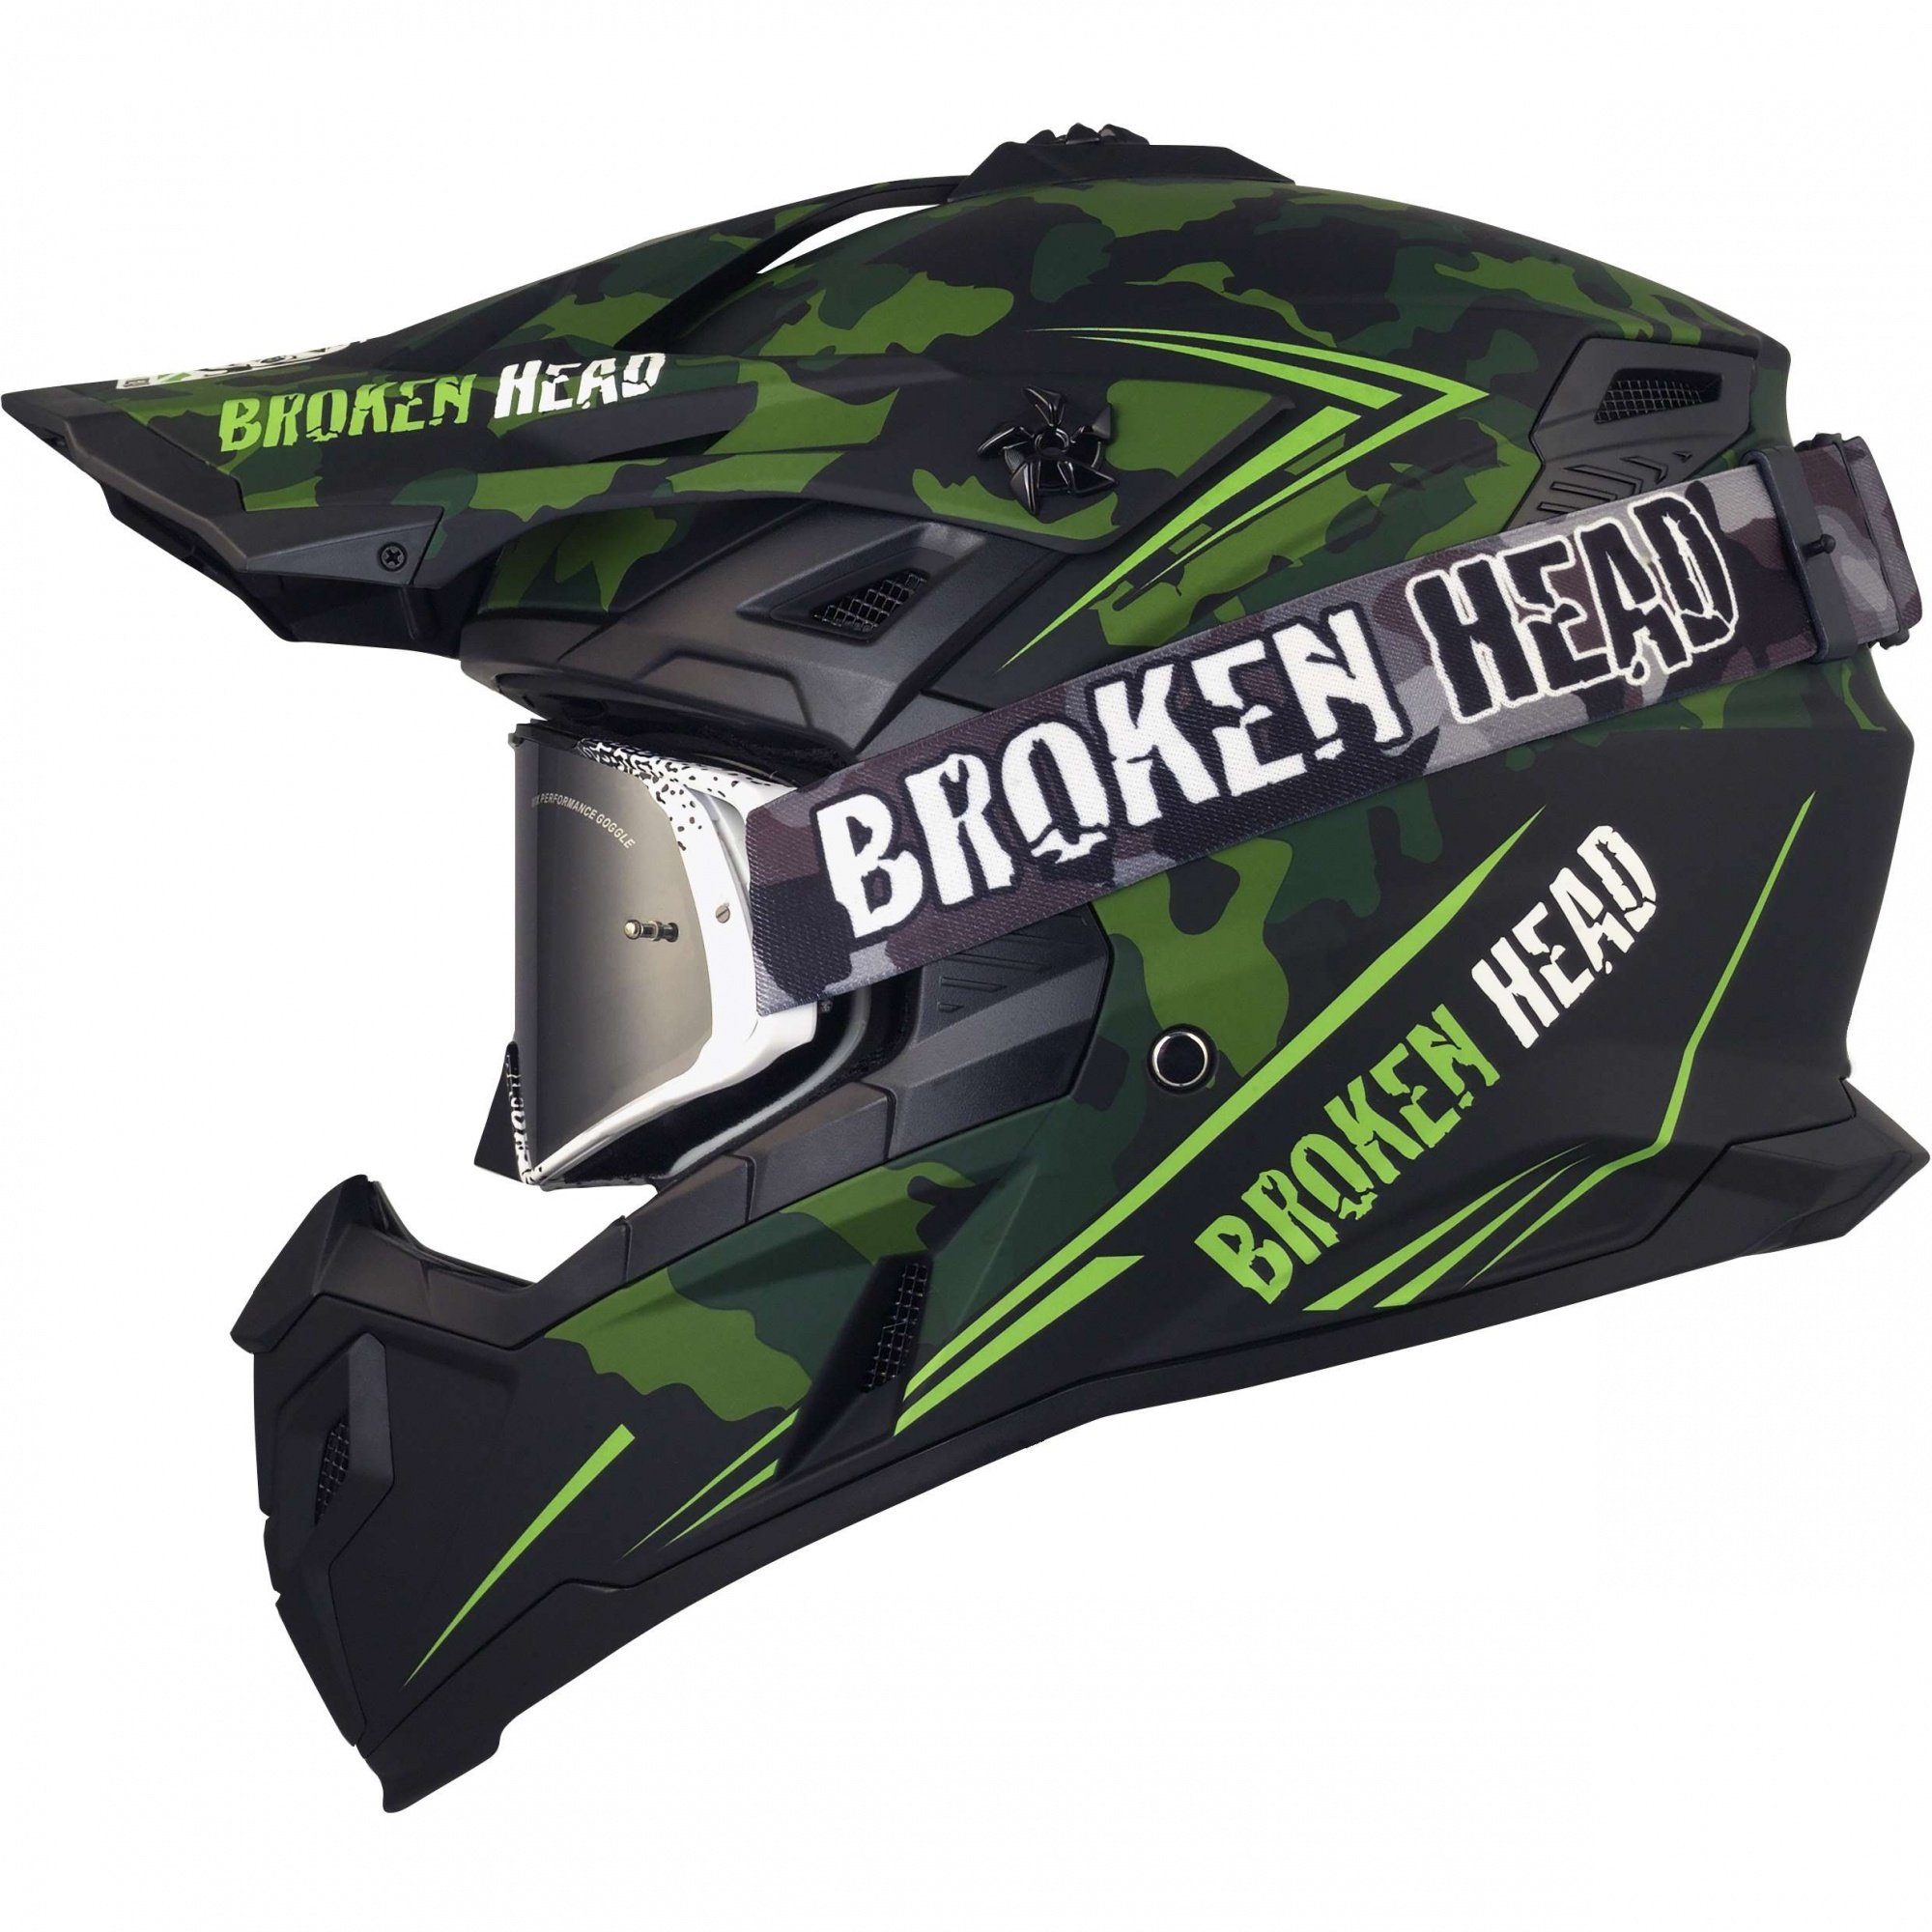 Broken Head Motocrosshelm Squadron Rebelution Grün + MX-Brille Schwarz (Mit schwarzer MX-Brille), Mit zwei Verschlüssen!